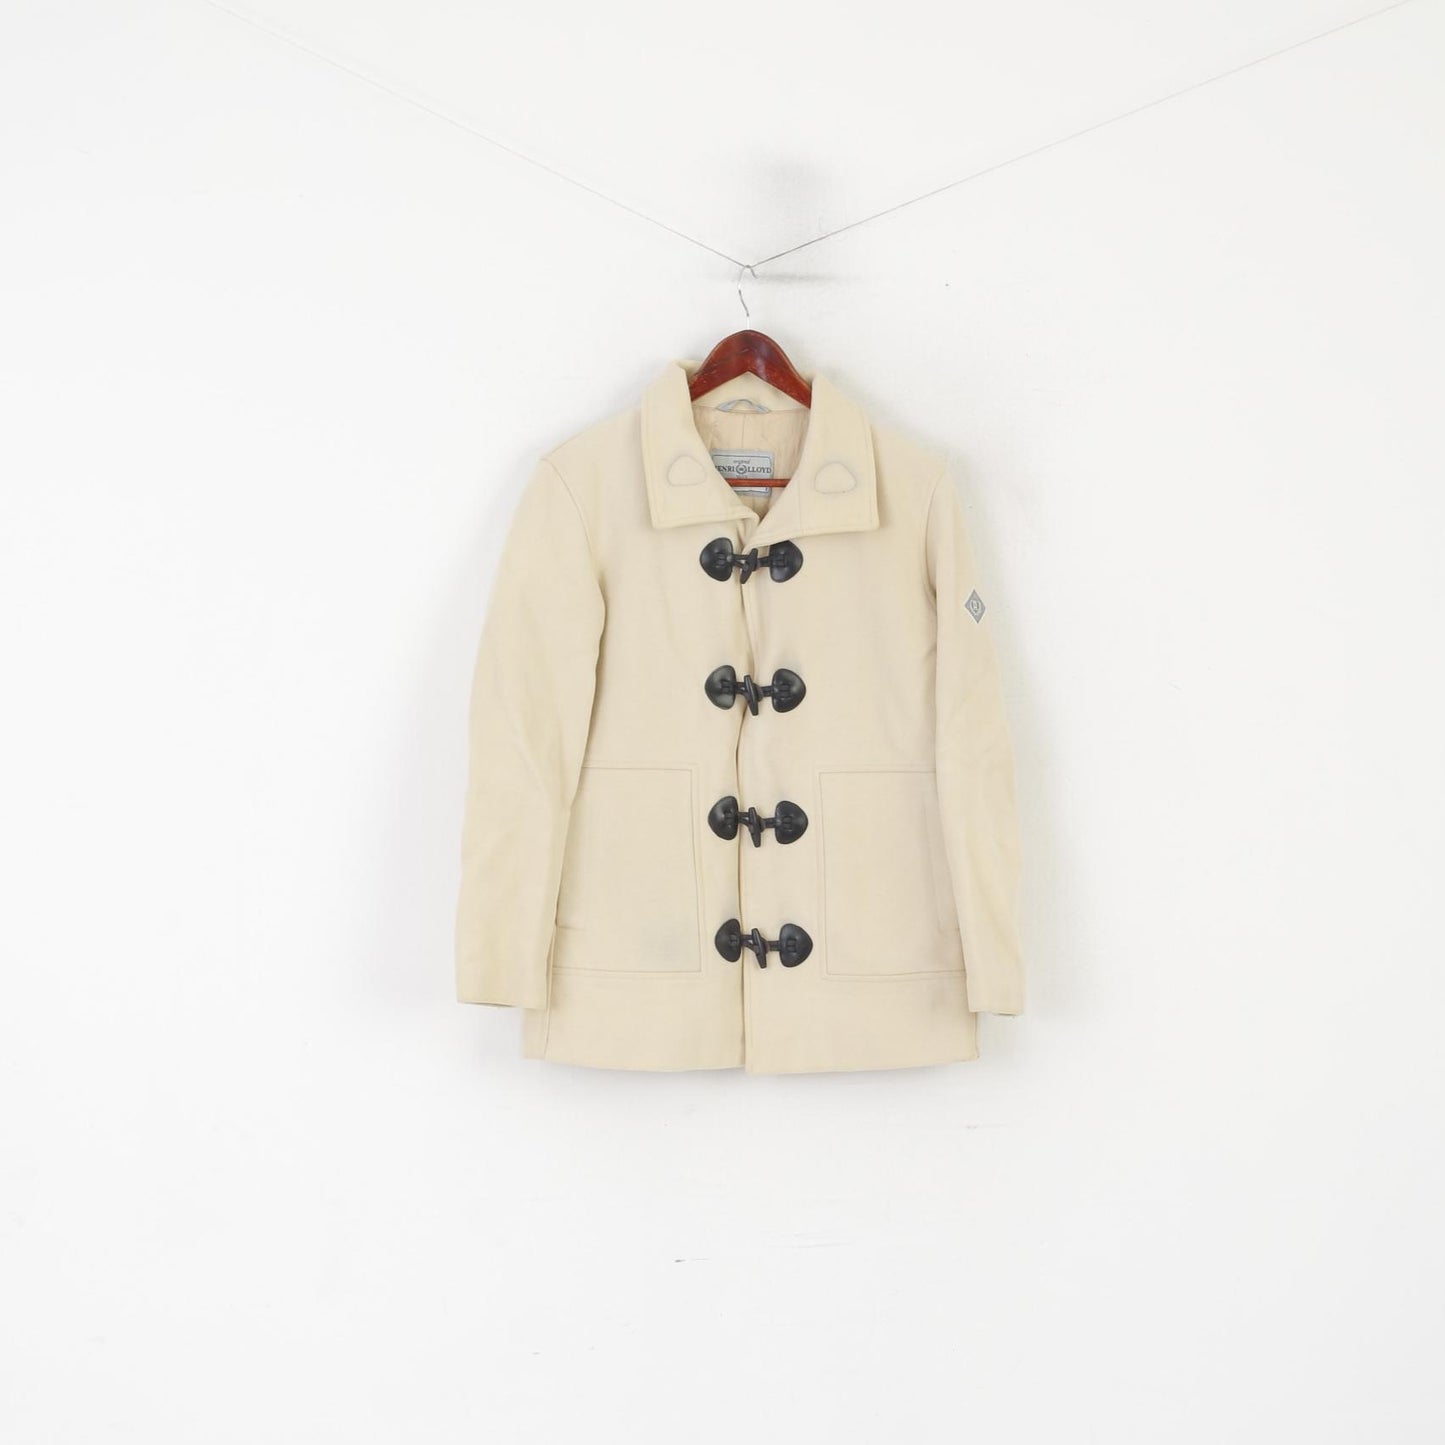 Henri Lloyd Femmes 2 S Duffel Jacket Beige Laine vintage Manteau Classique